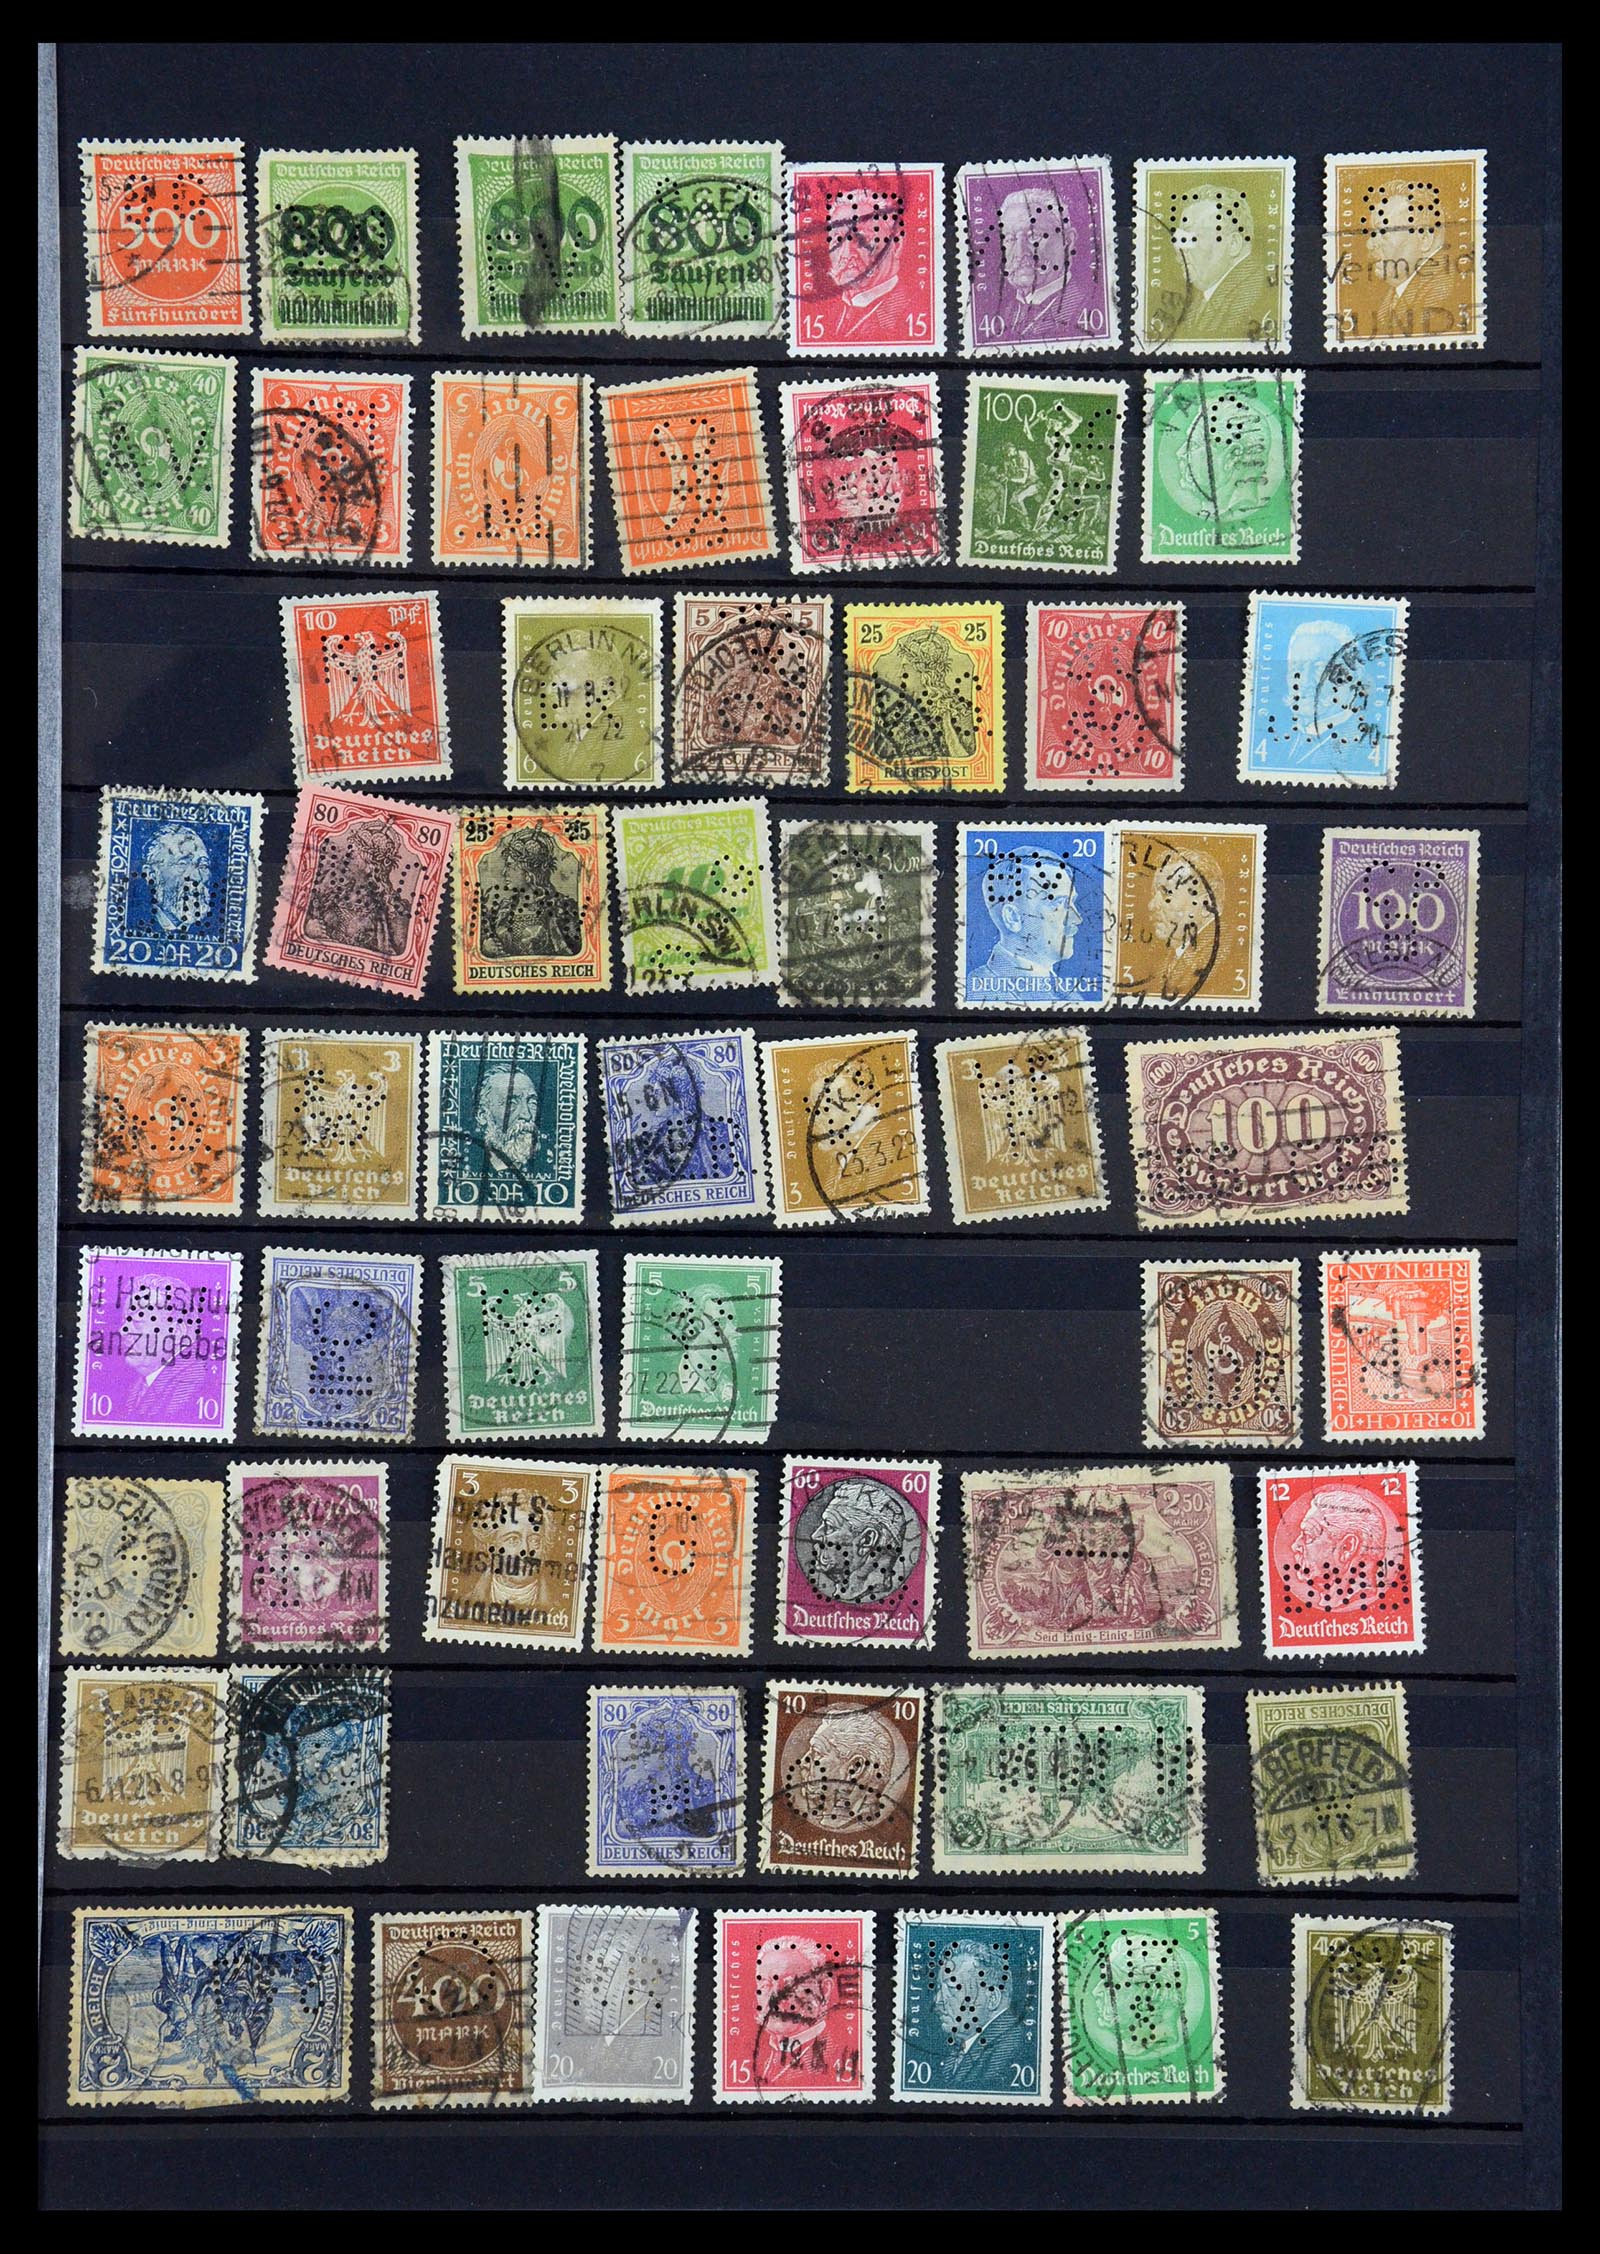 35183 017 - Stamp Collection 35183 German Reich perfins 1880-1945.